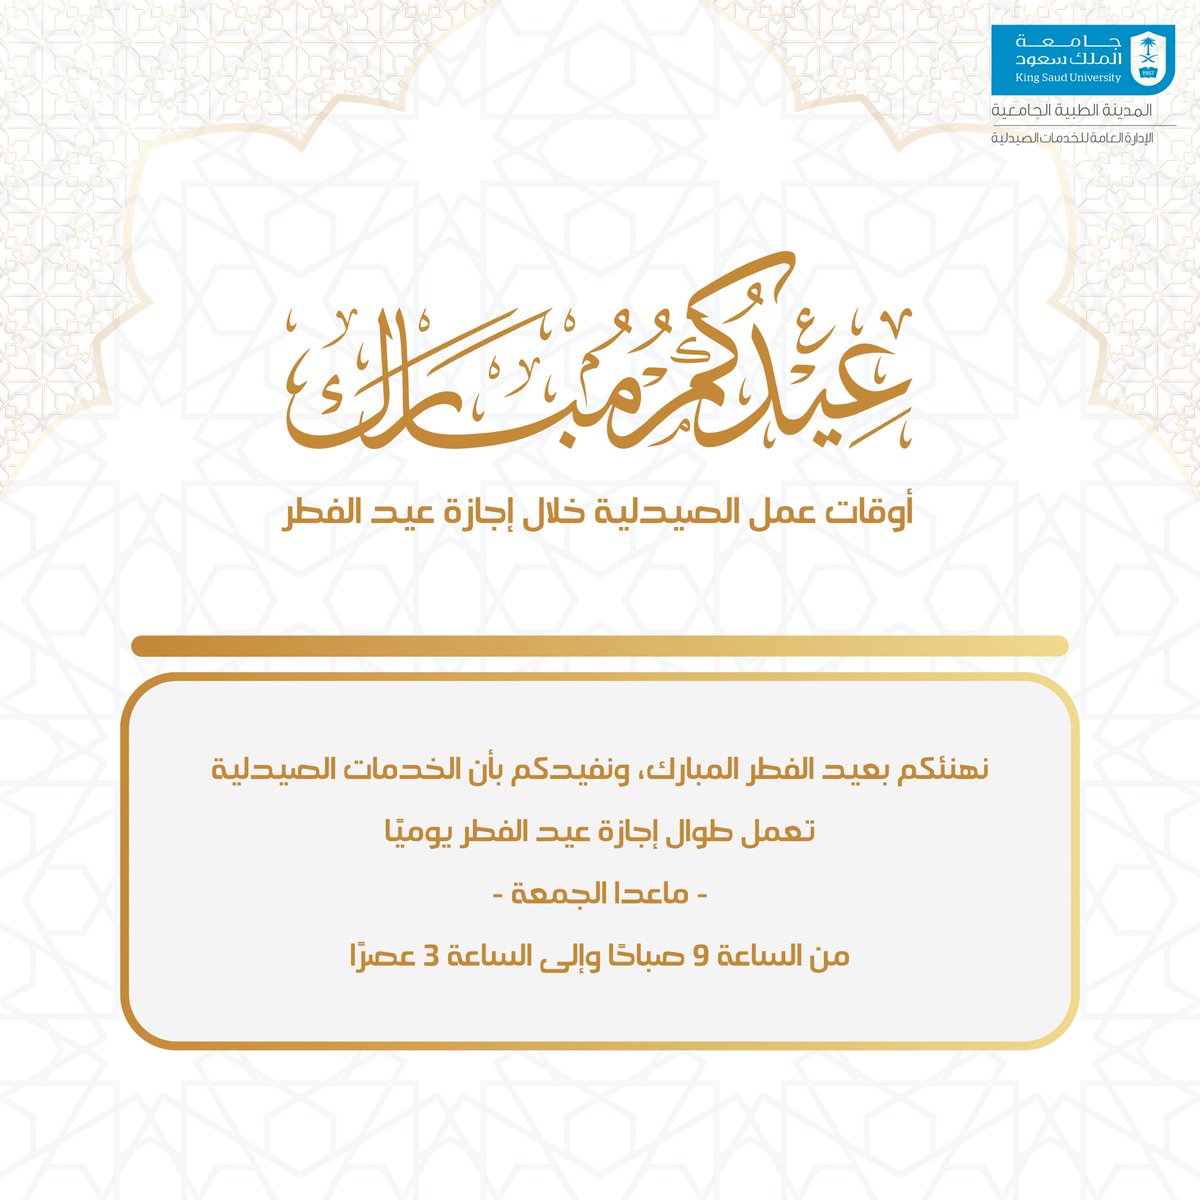 أوقات عمل الصيدلية في #المدينة_الطبية بـ #جامعة_الملك_سعود خلال أيام #عيد_الفطر_المبارك .